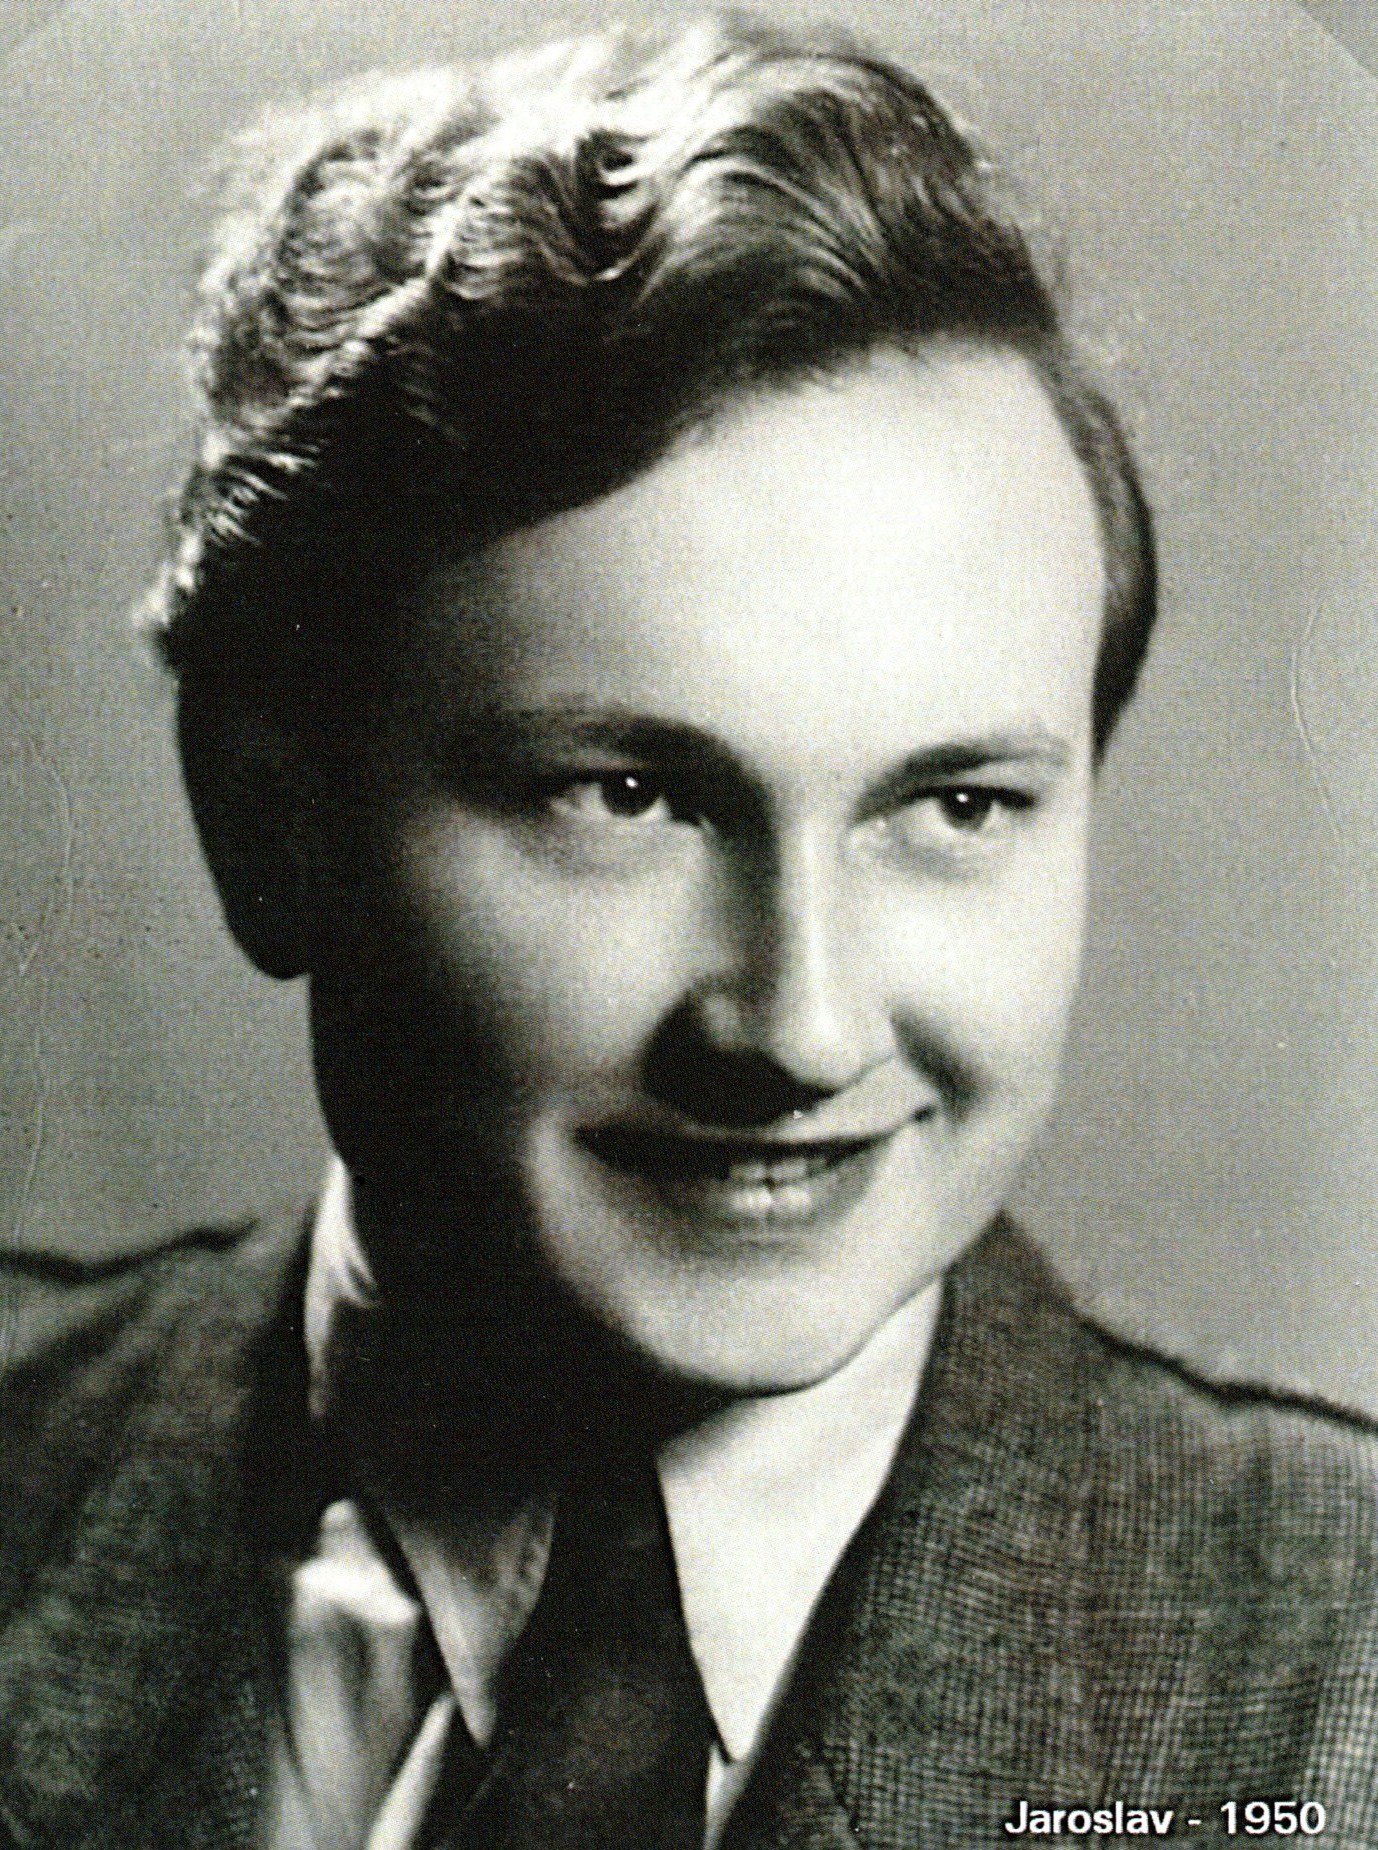 Jaroslav Dvořáček in 1950